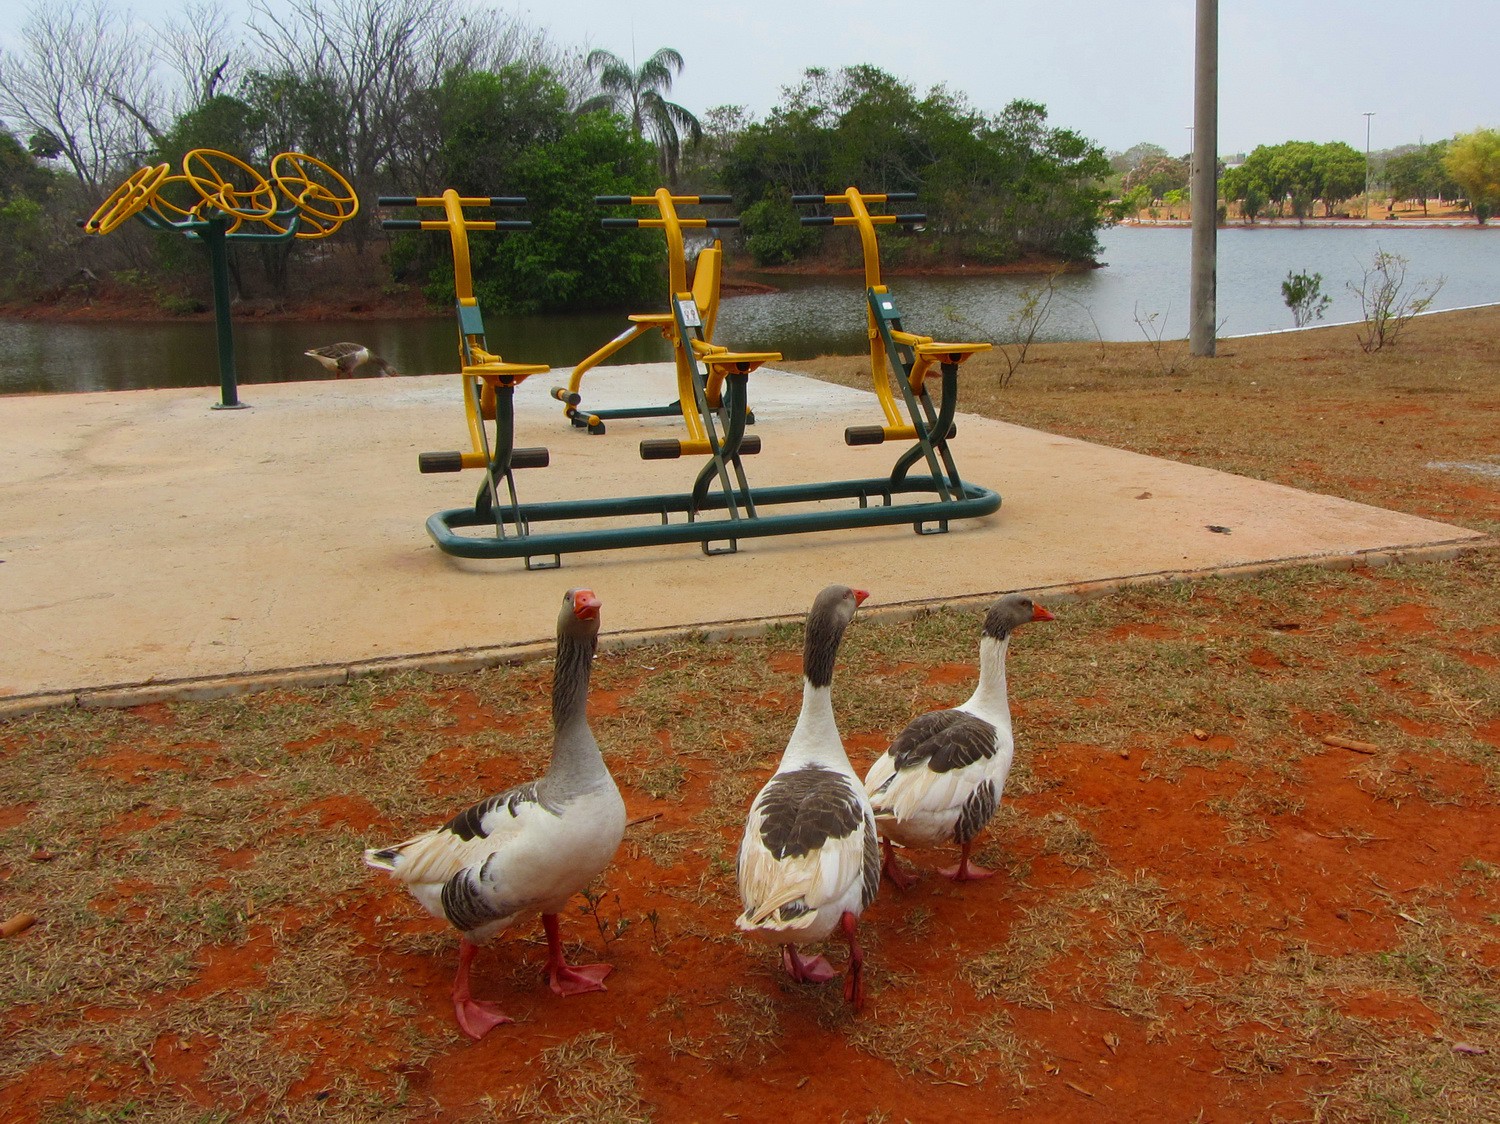 Geese in the Parque da Cidade